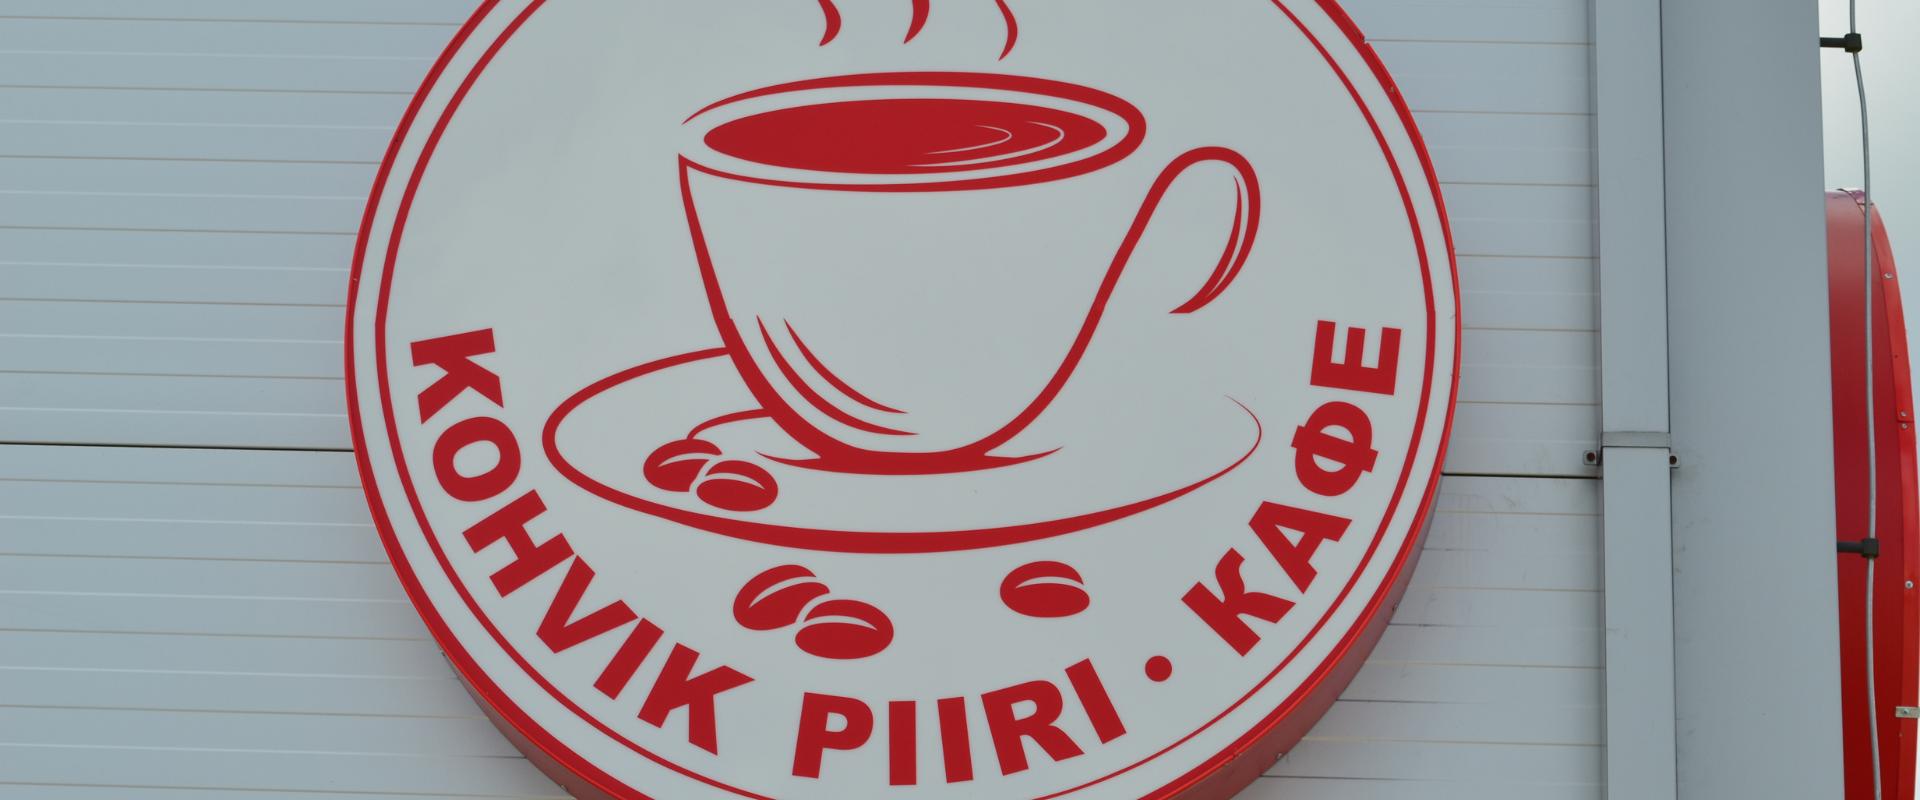 Piiri Café